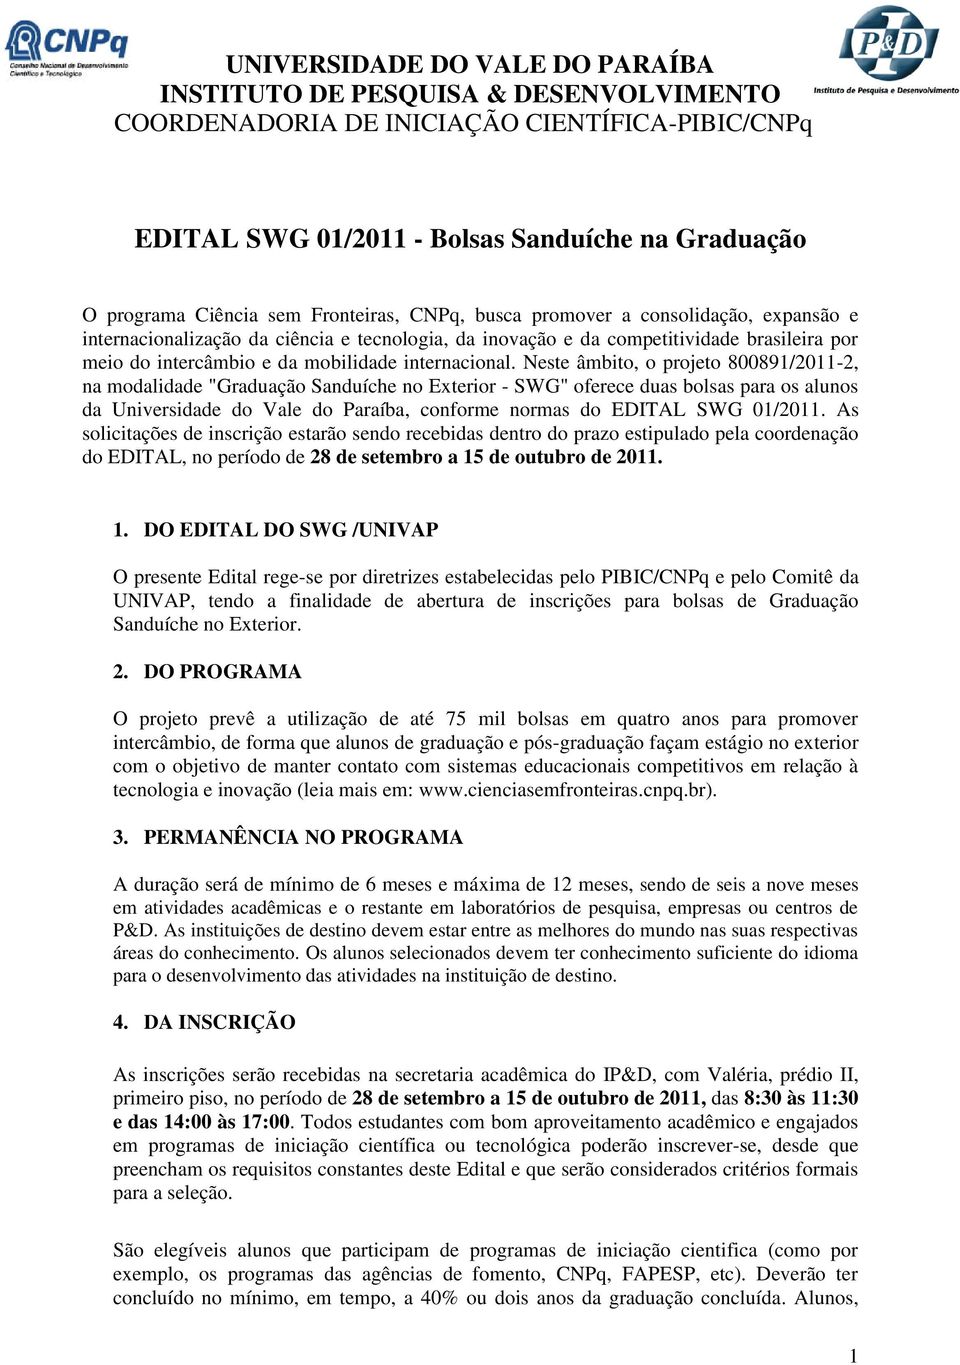 Neste âmbito, o projeto 800891/2011-2, na modalidade "Graduação Sanduíche no Exterior - SWG" oferece duas bolsas para os alunos da Universidade do Vale do Paraíba, conforme normas do EDITAL SWG